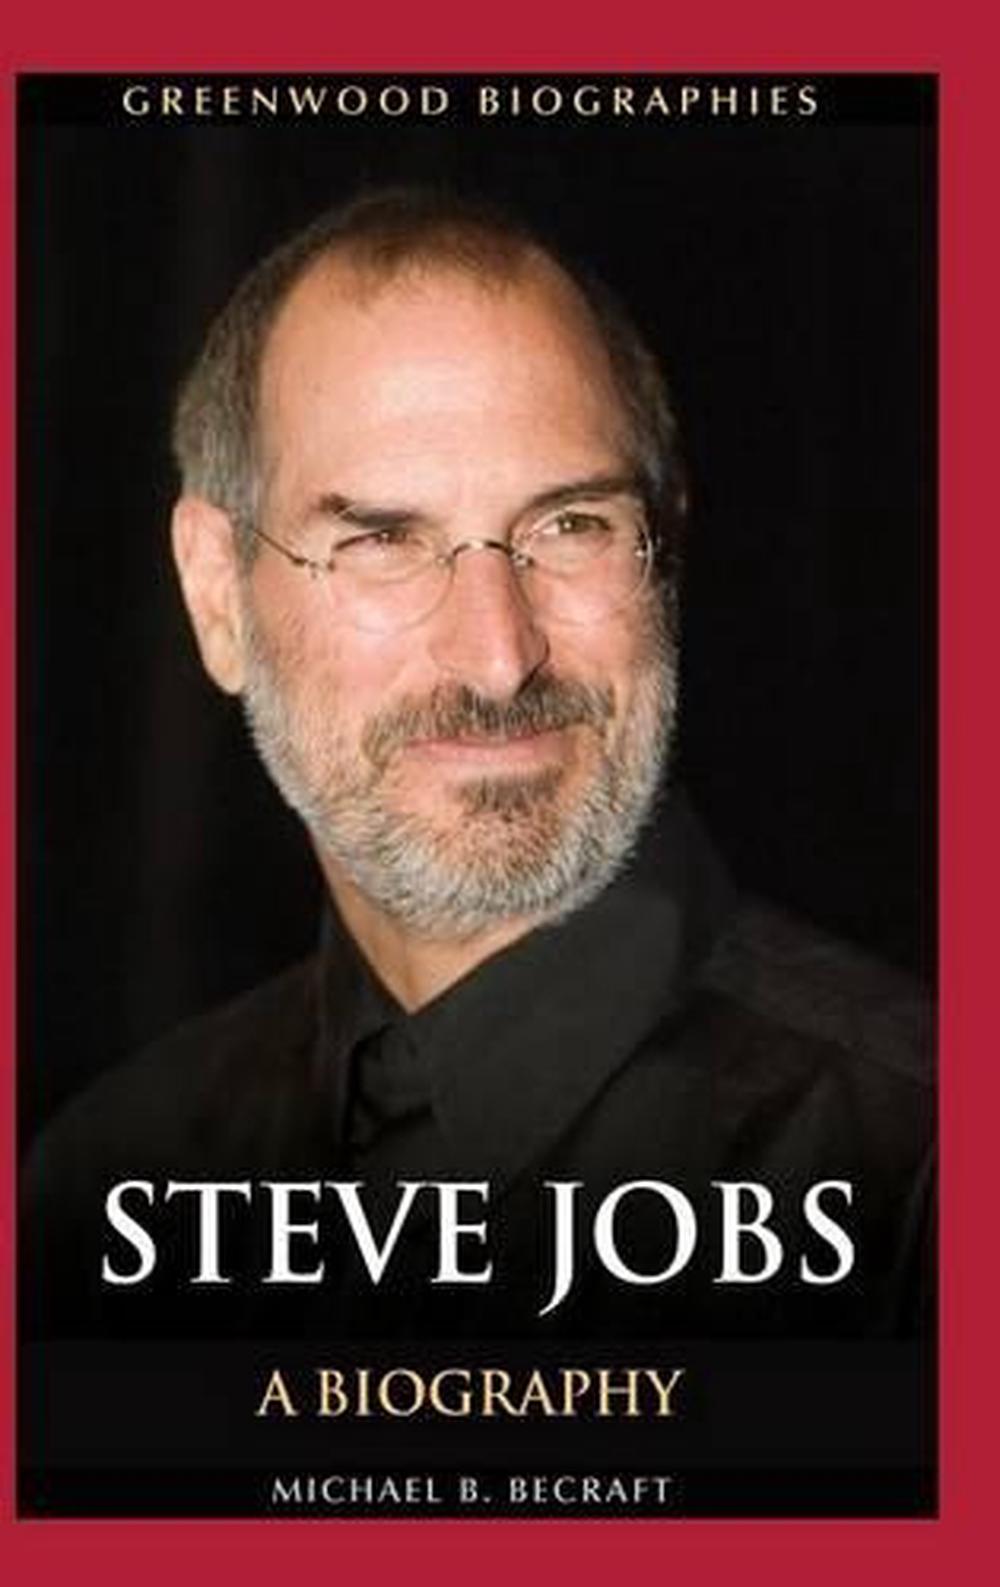 biography for steve jobs